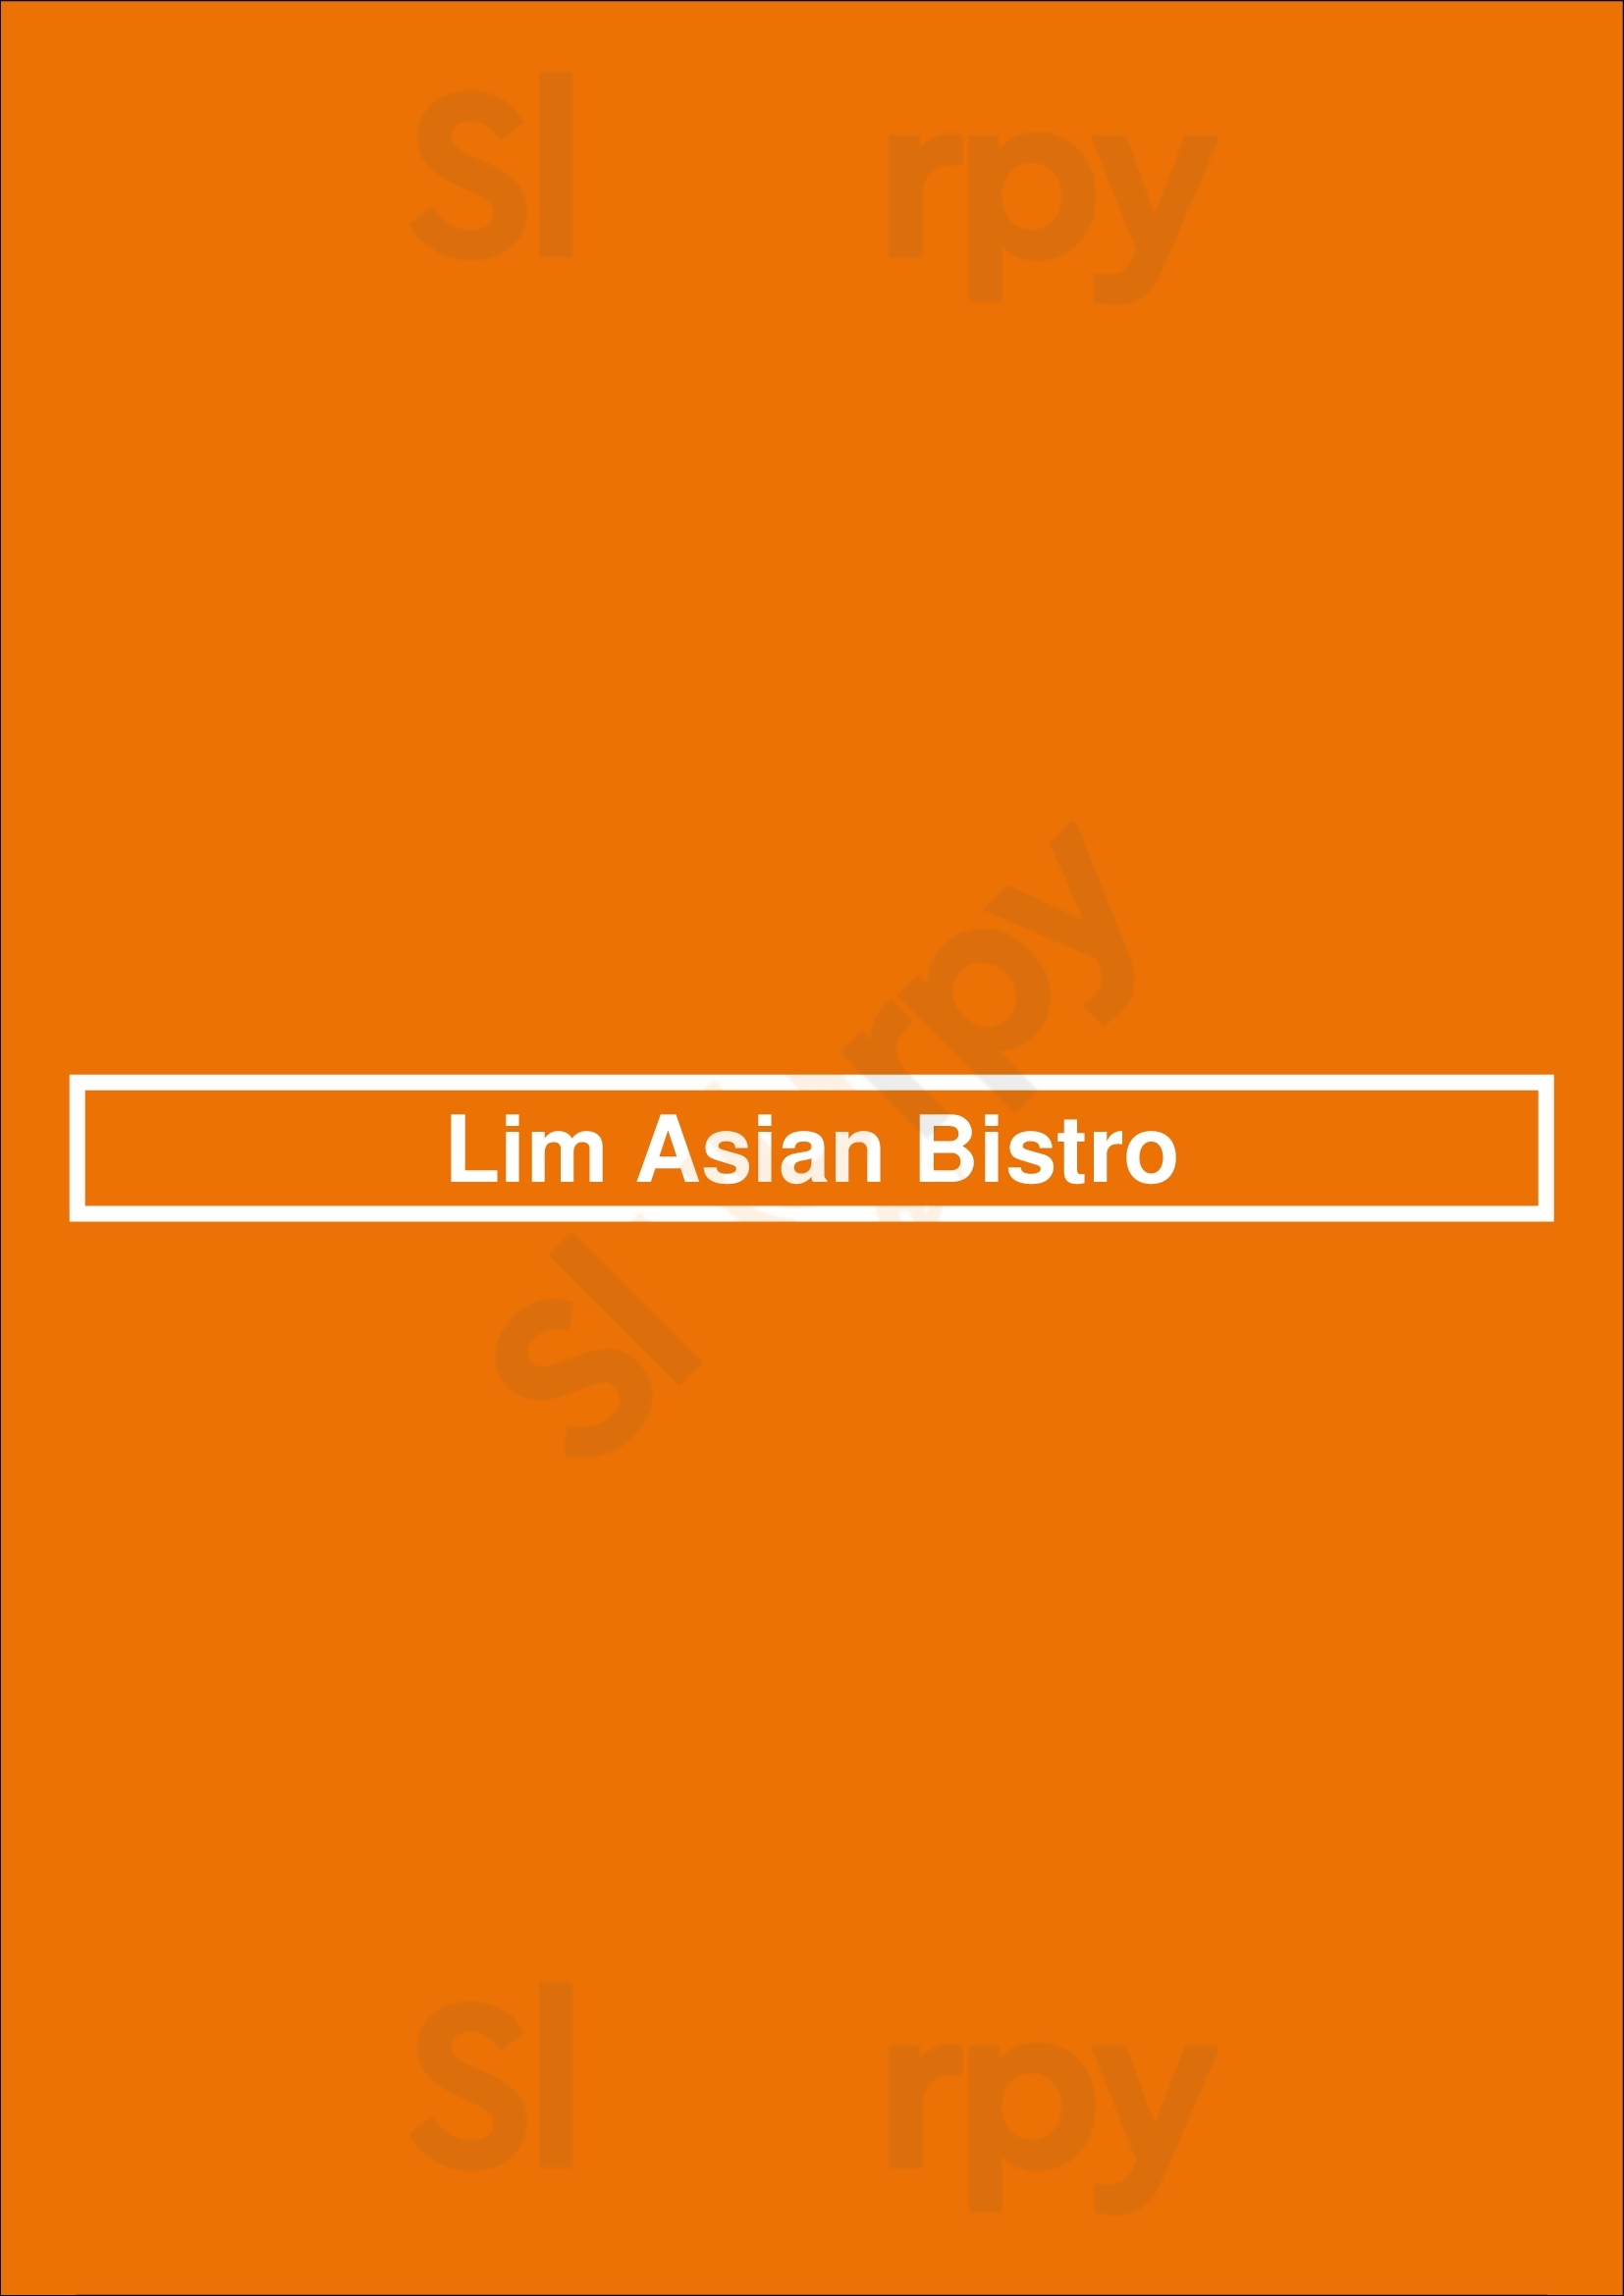 Lim Asian Bistro Spakenburg Menu - 1